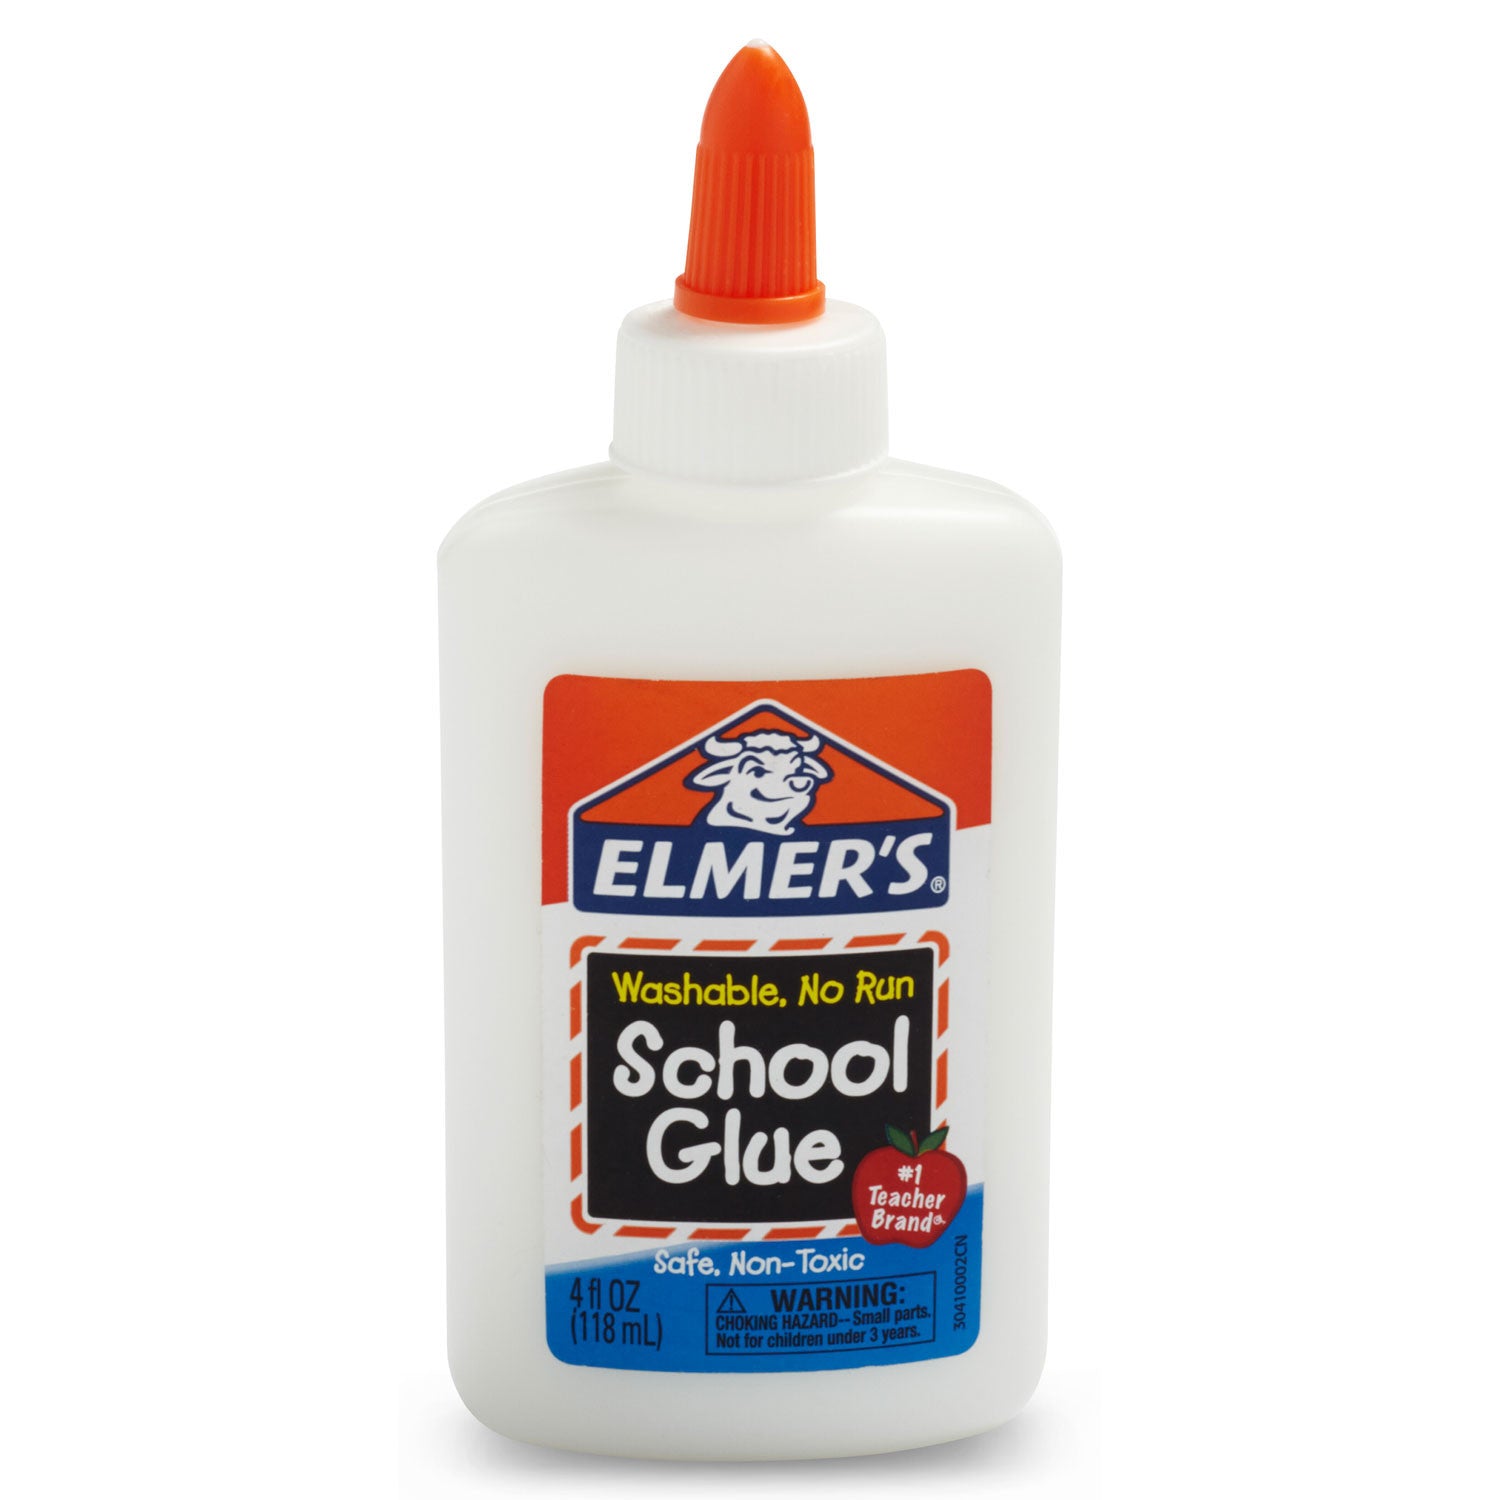 Elmer's Washable, No Run School Glue, 4oz Dries Clear